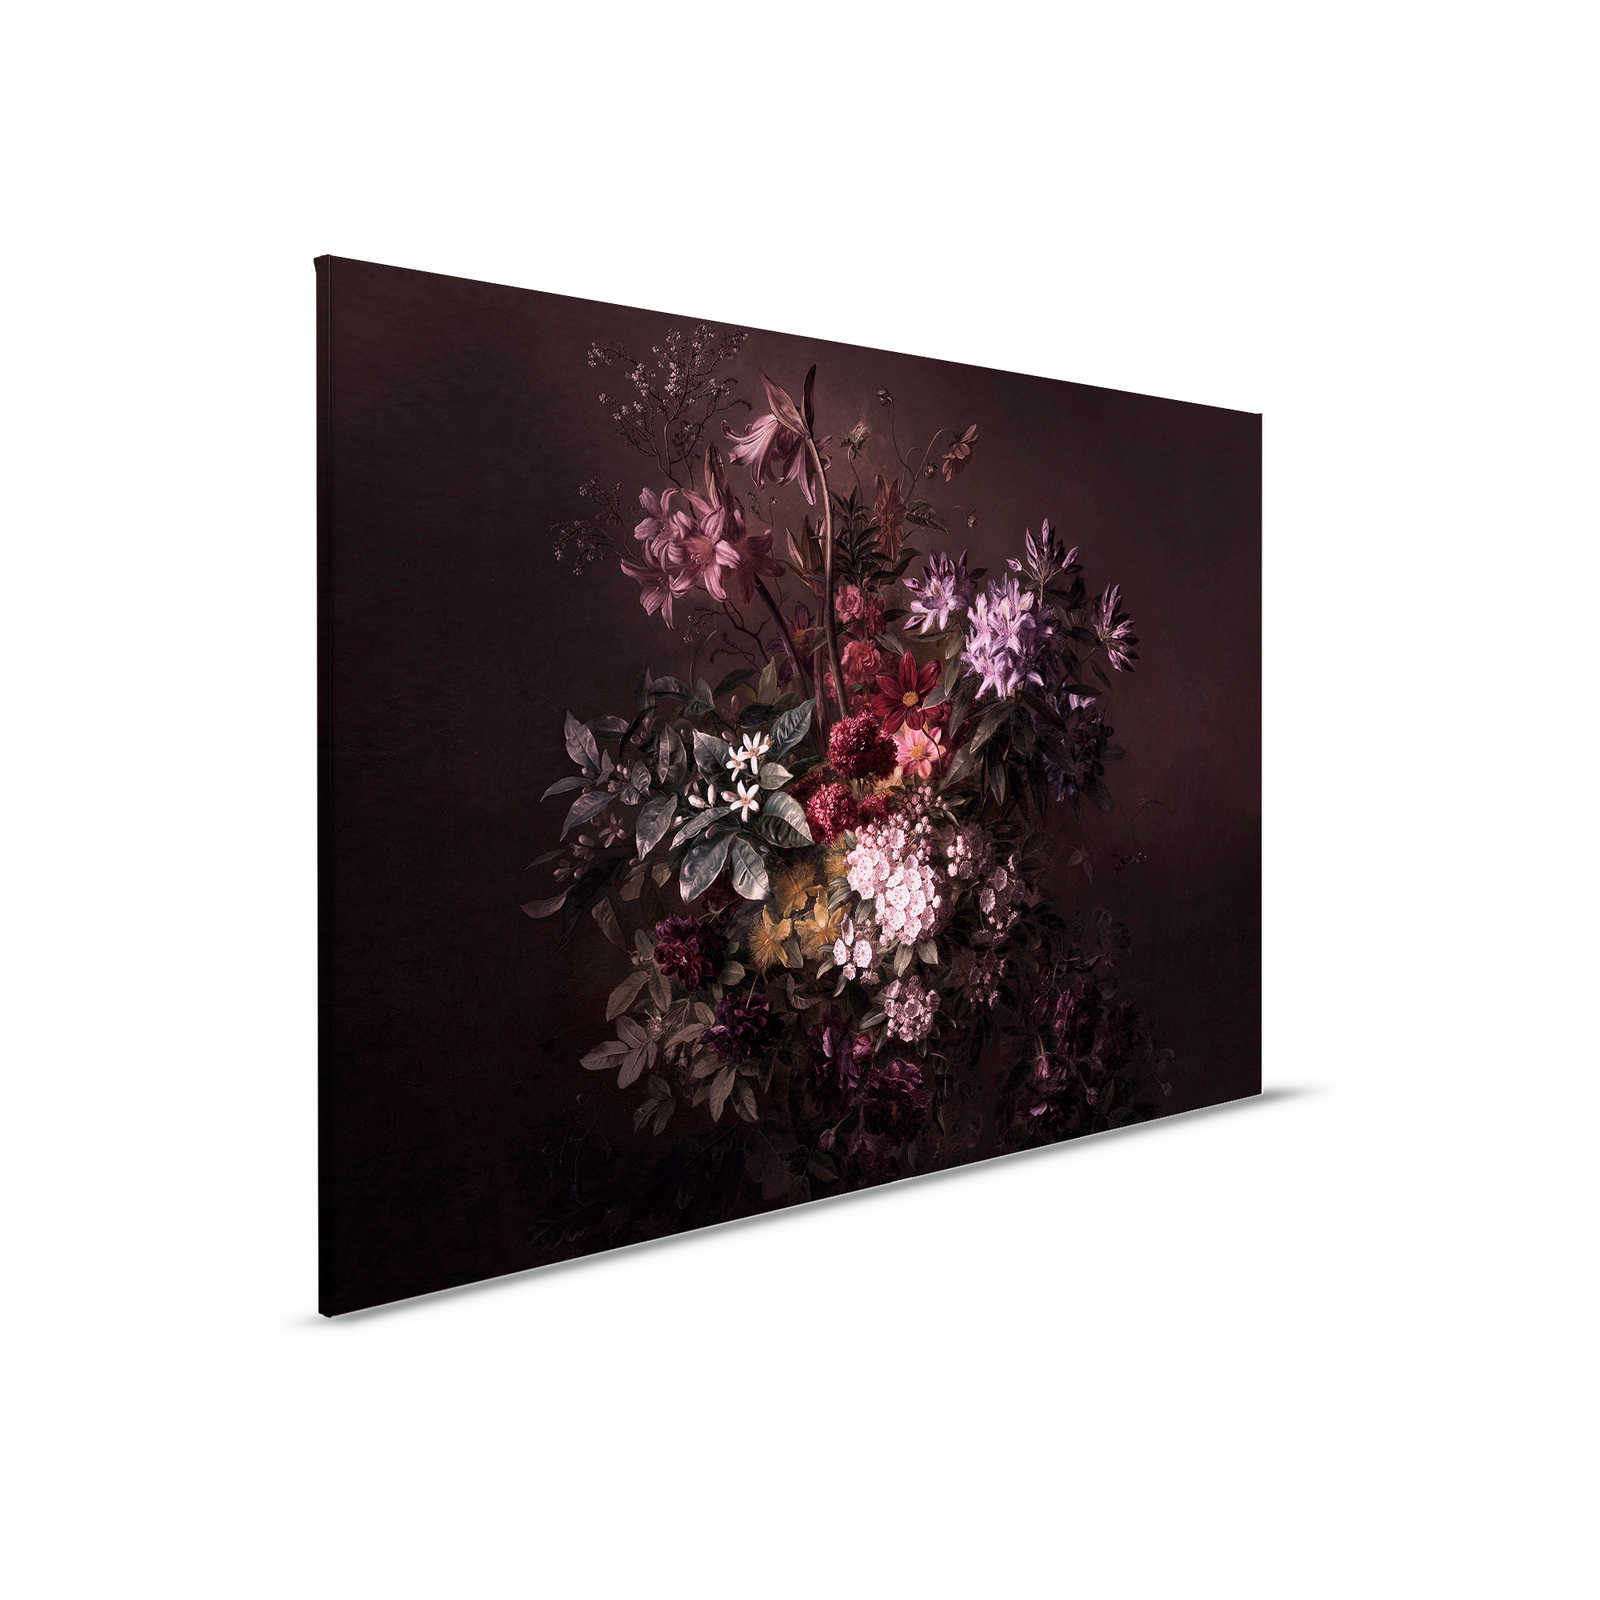         Leinwandbild Blumen Stillleben – 0,90 m x 0,60 m
    